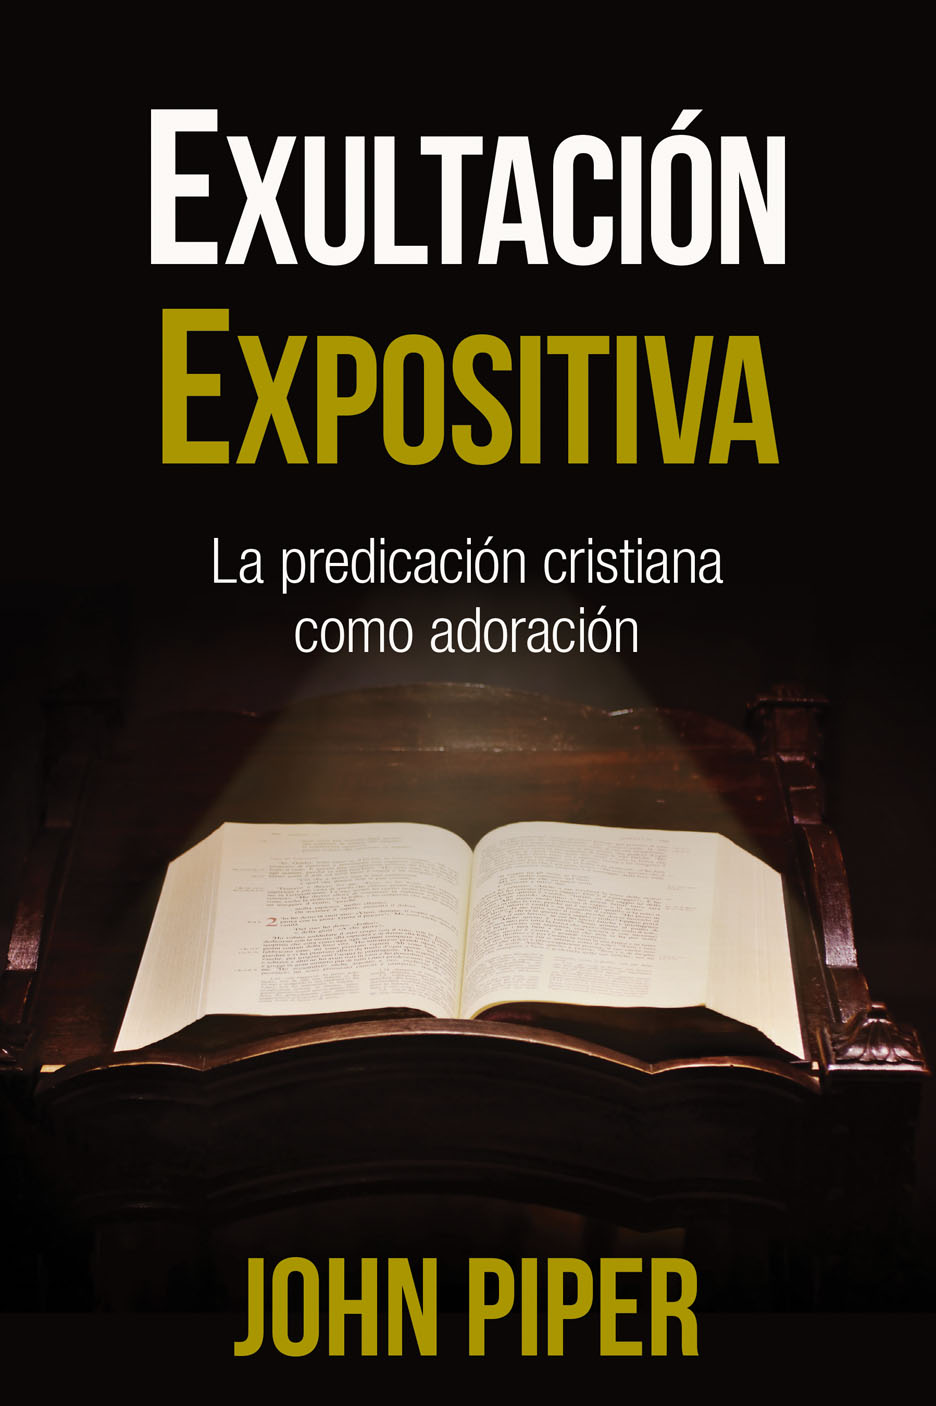 Editorial Portavoz publica Exultación expositiva de John Piper, último libro de una trilogía